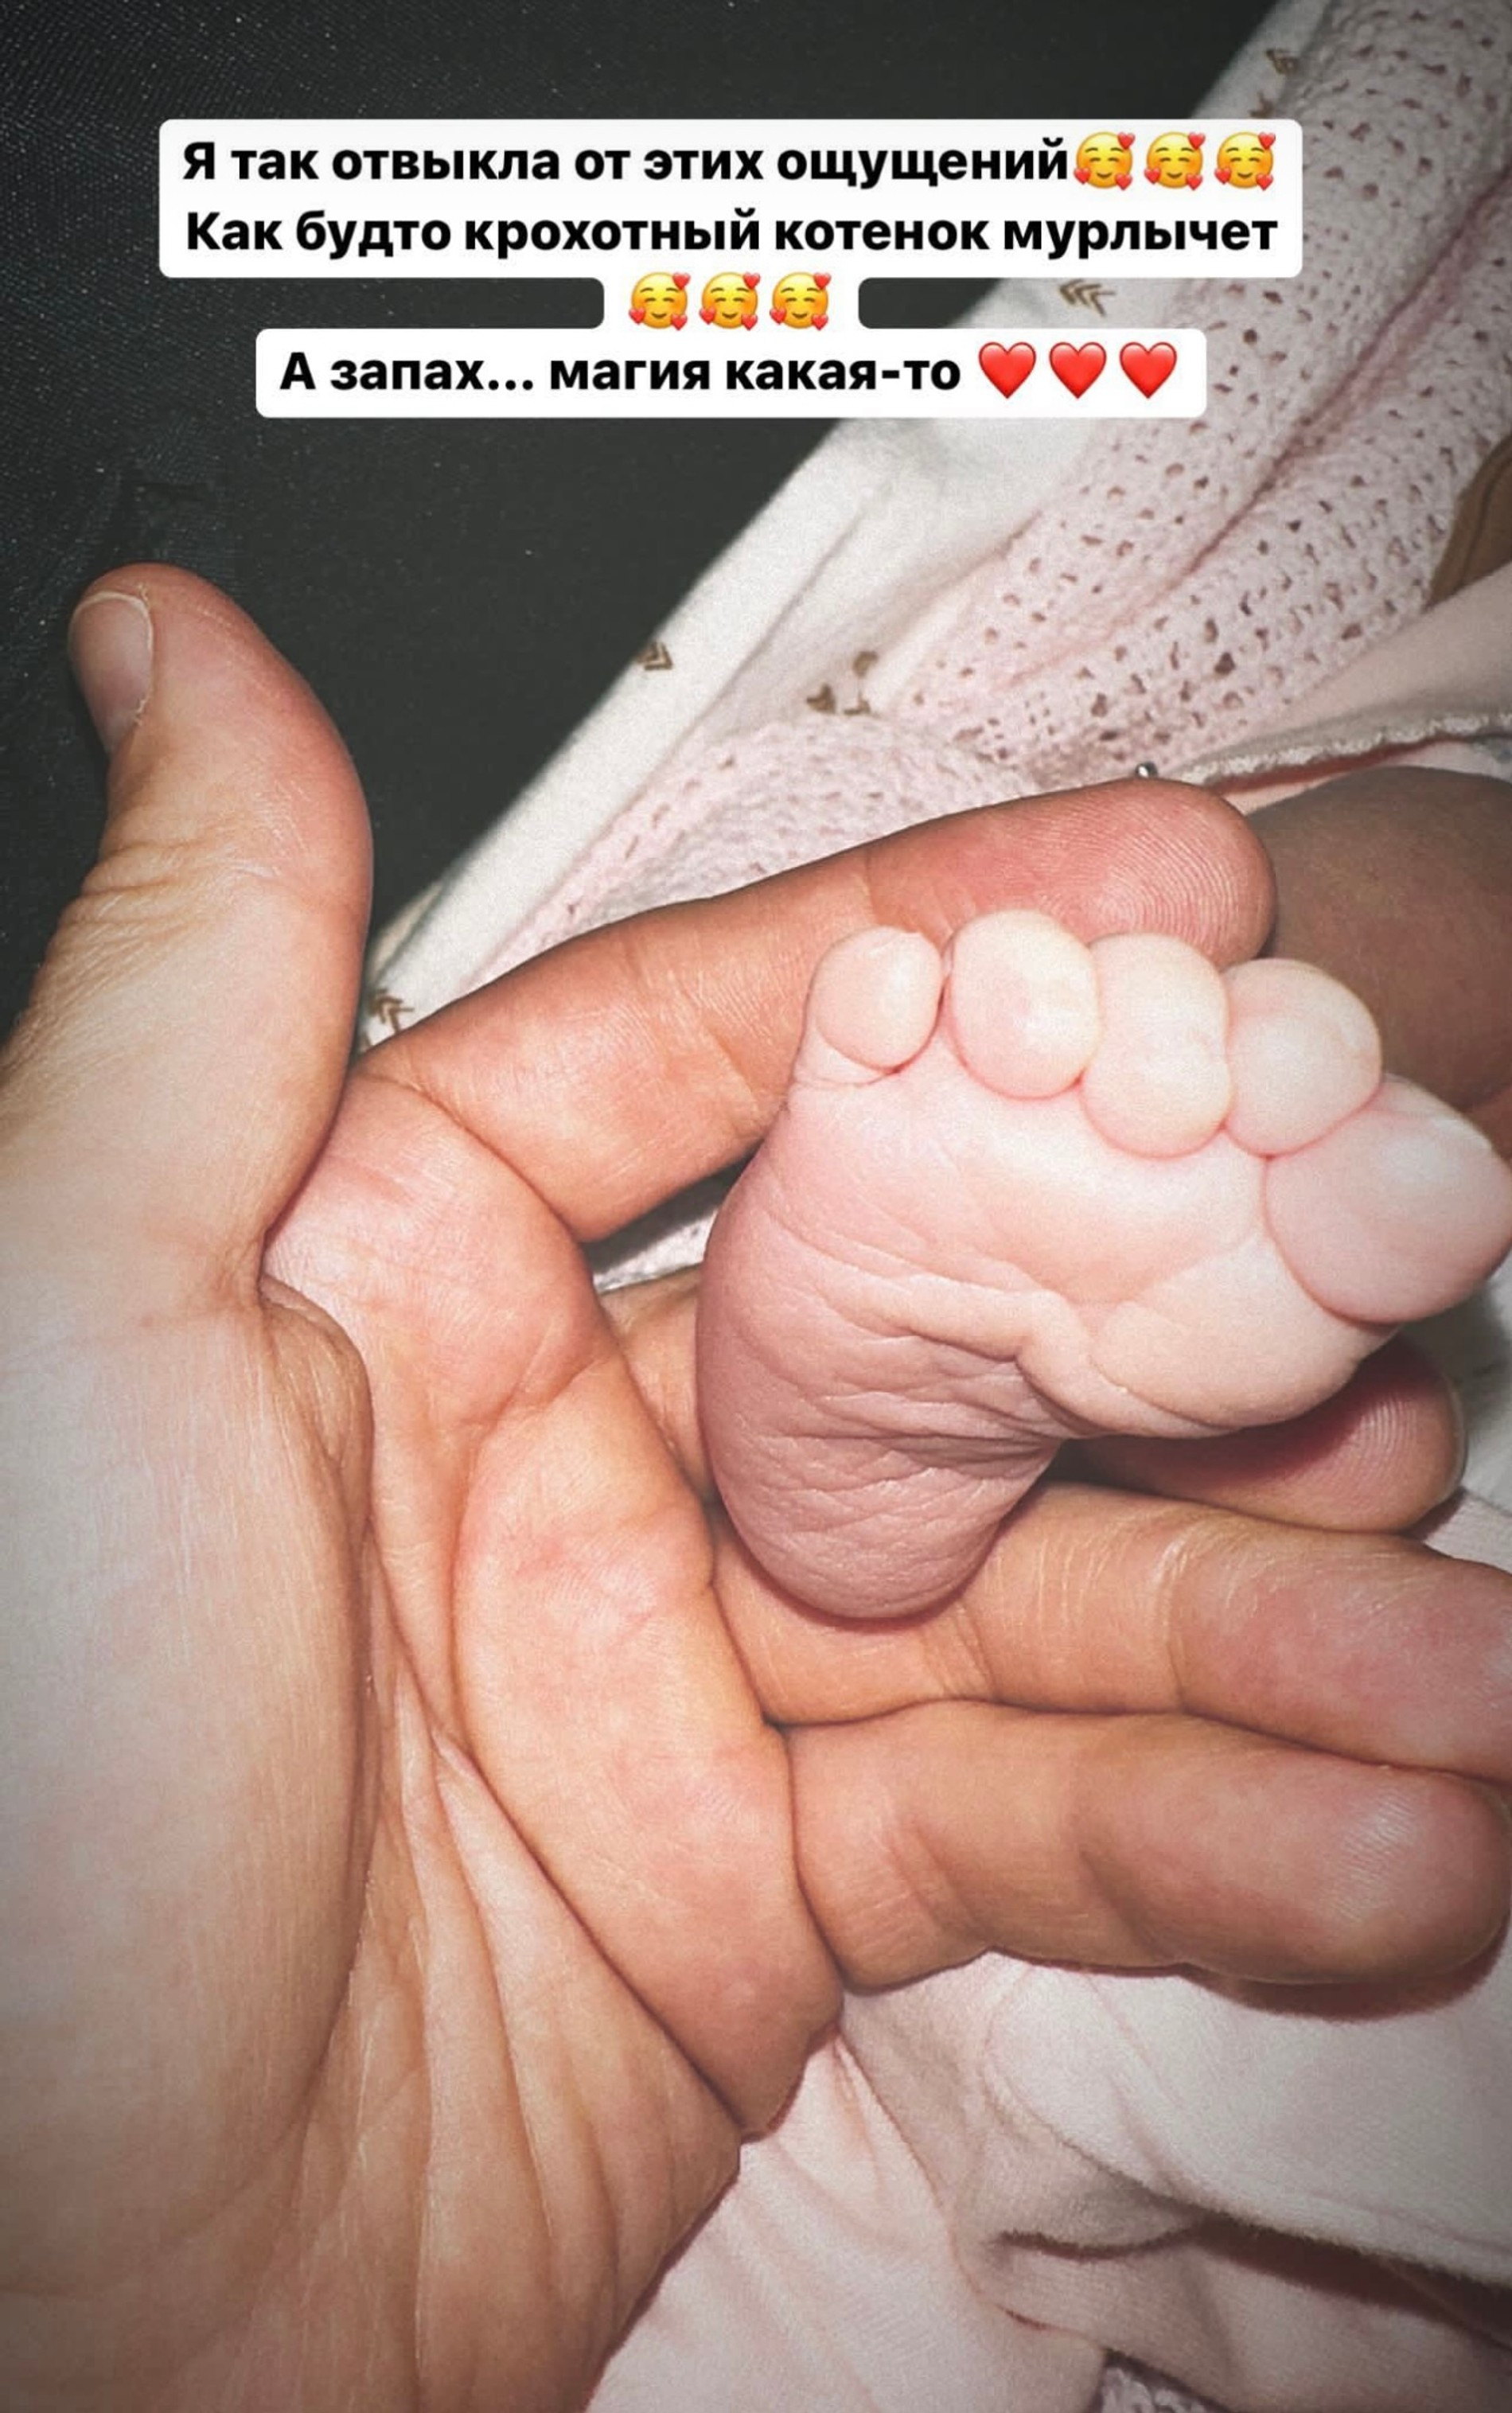 Фото Ханны с ножкой новорожденной дочери
Фото: Инстаграм (запрещен в РФ)